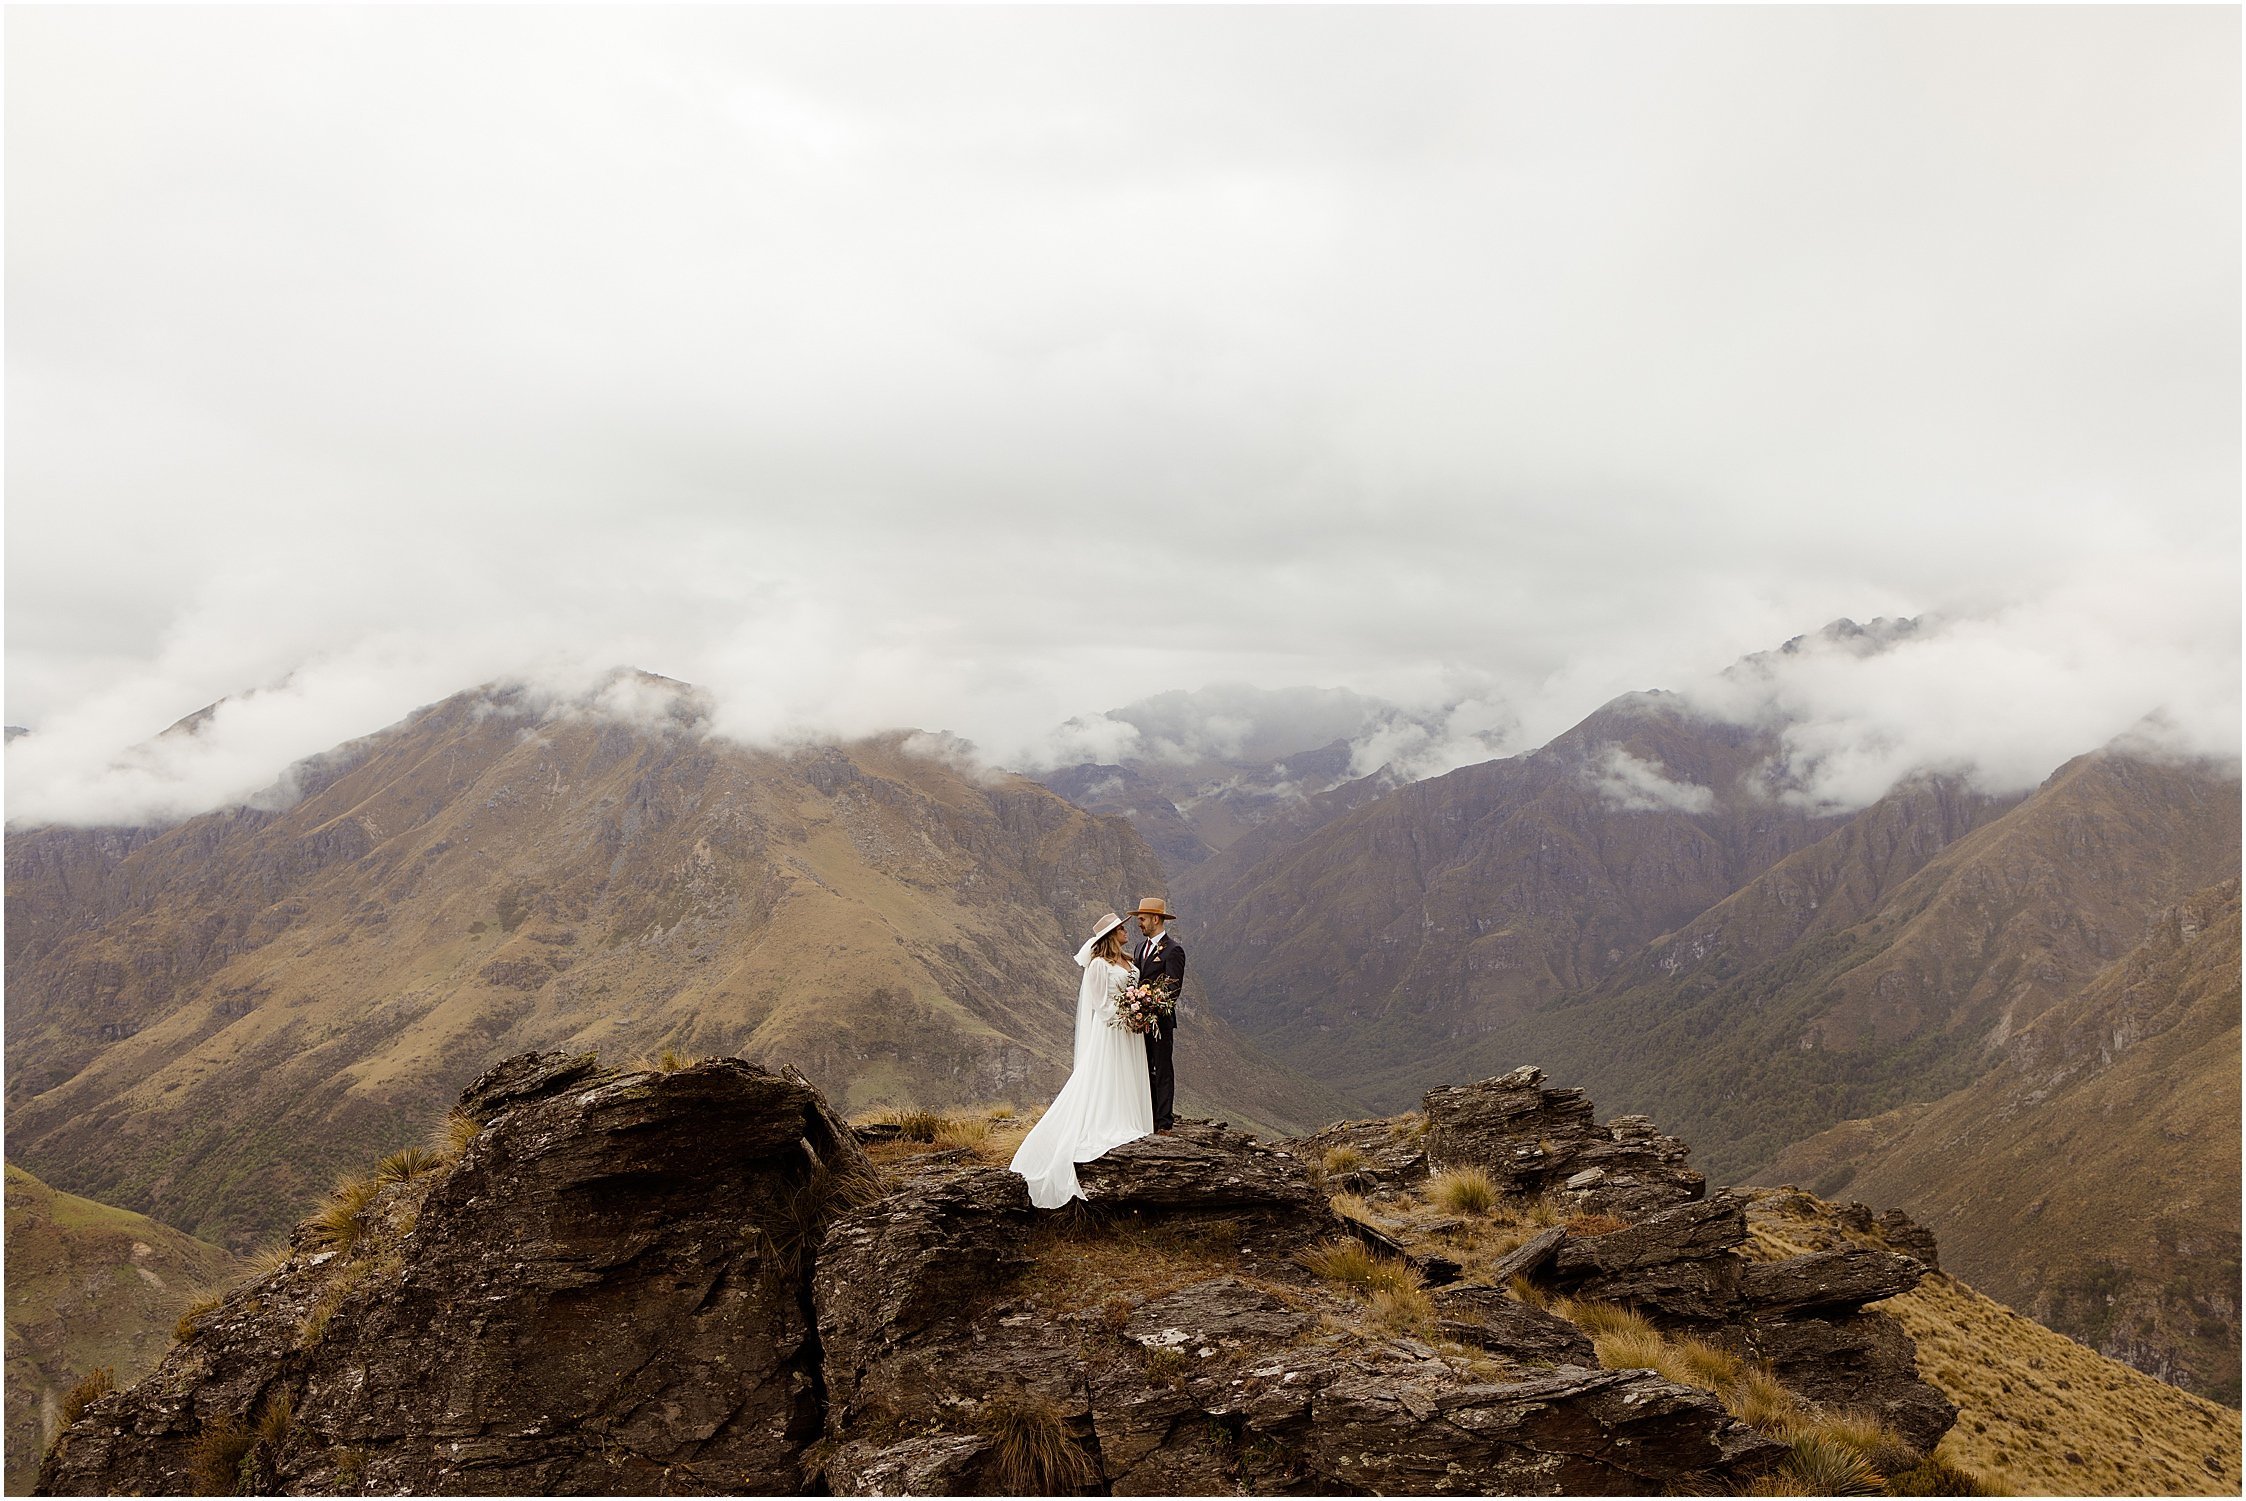 Zanda+Auckland+wedding+photographer+New+ZealandQueenstown+helicopter+elopement_0259.jpg